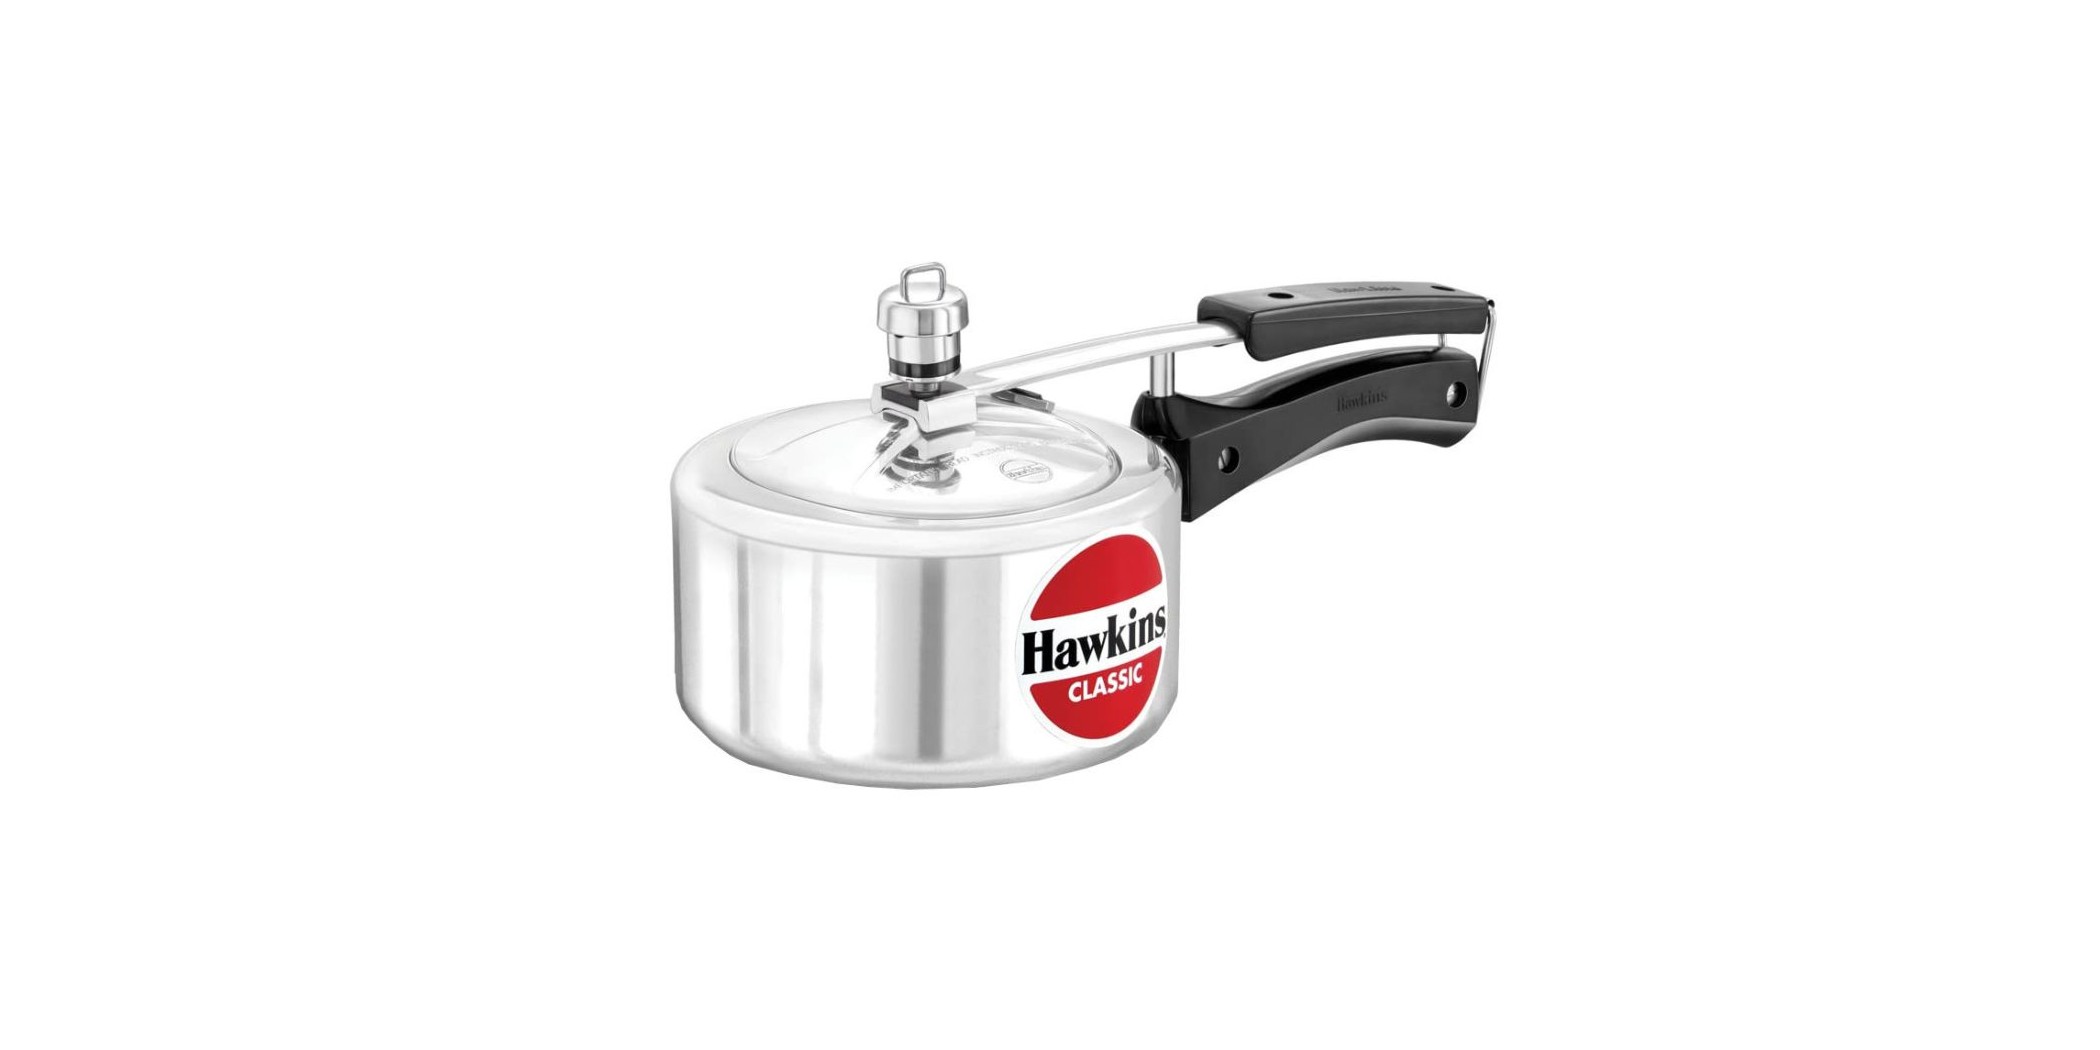 Hawkins CL15 1.5L Classic Pressure Cooker